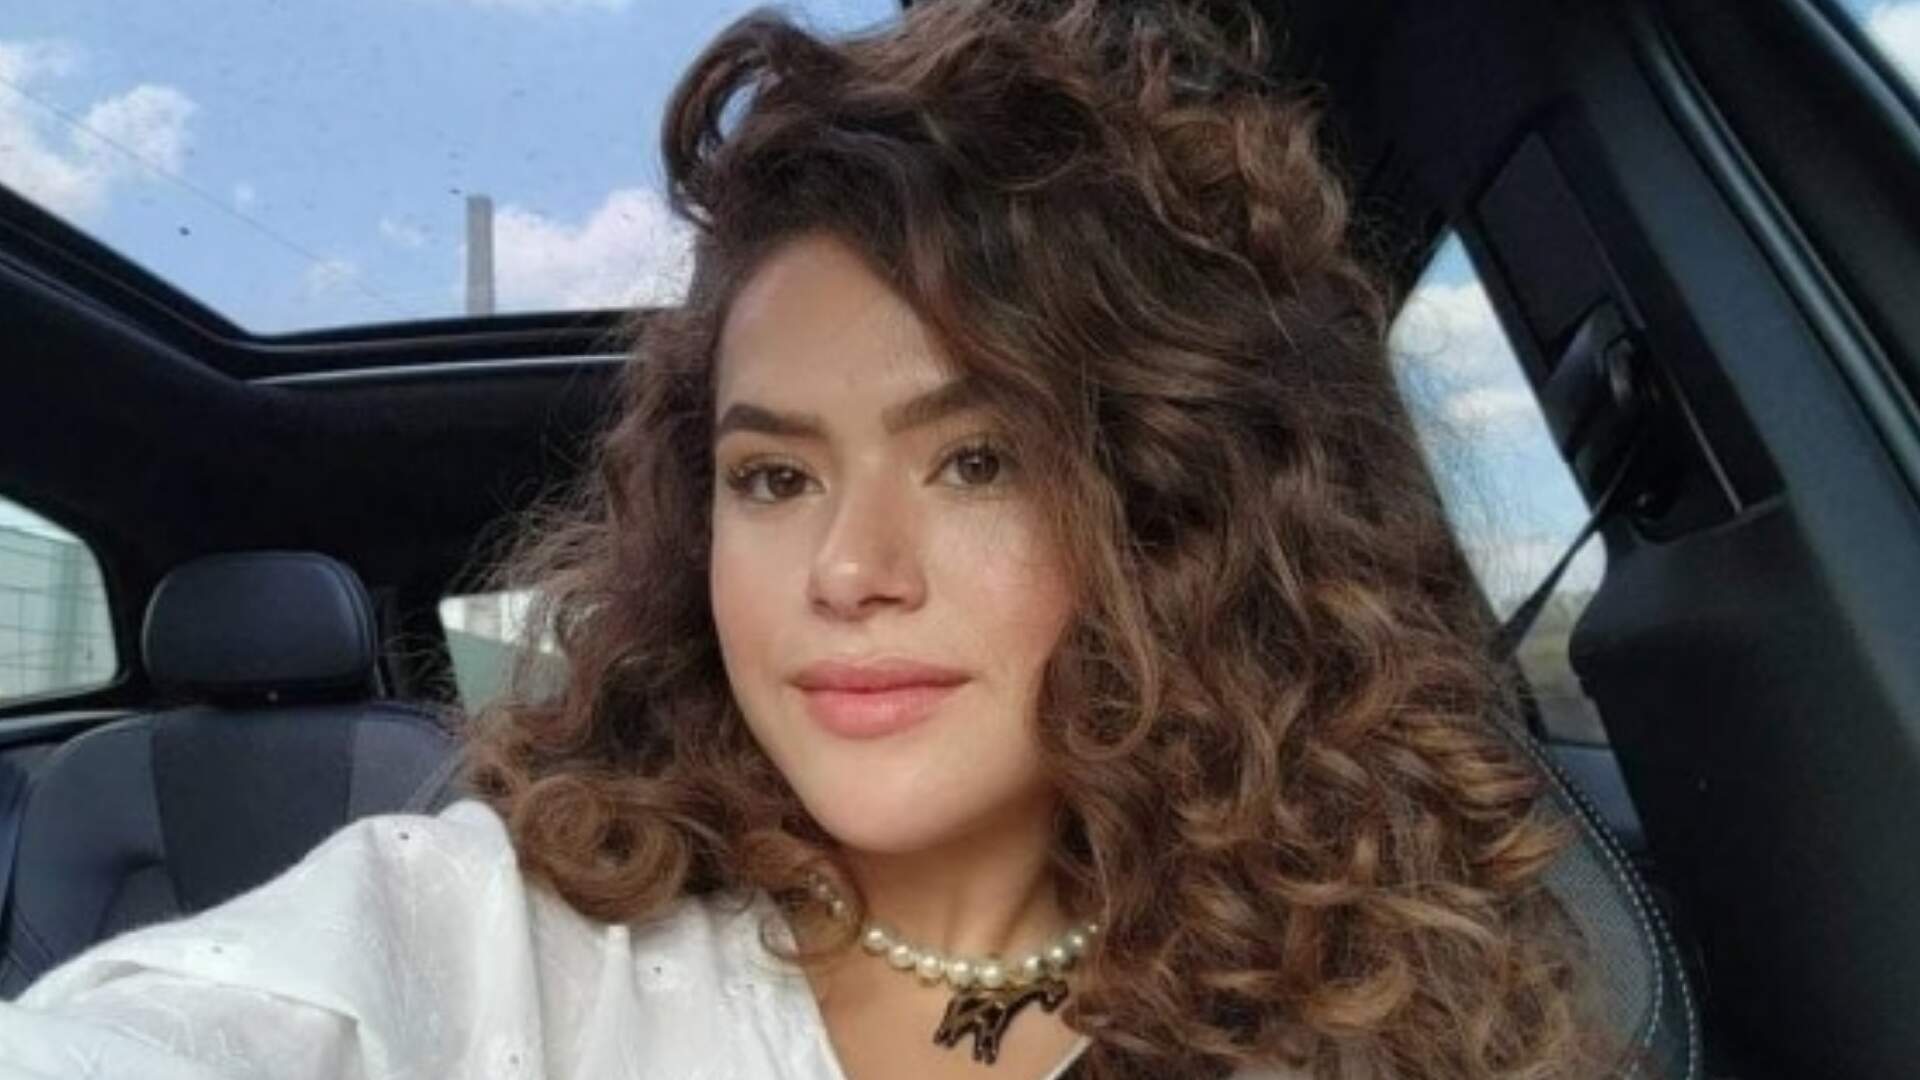 Mais reservada, Maisa Silva explica motivo de ausência nas redes sociais: “Um dos meus segredos” - Metropolitana FM